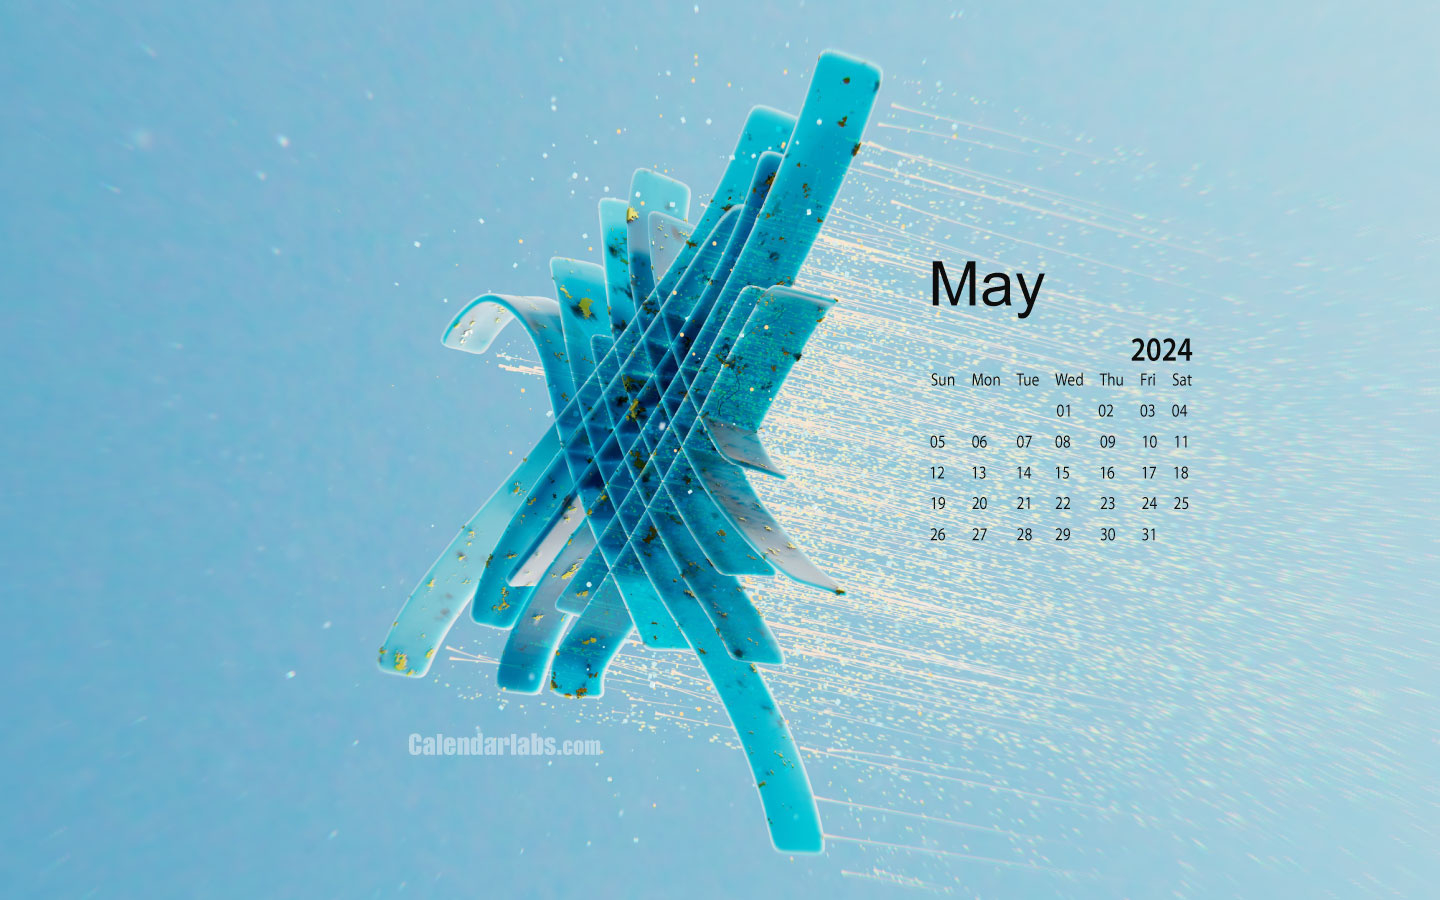 May 2024 Desktop Wallpaper Calendar - Calendarlabs in Free Printable Calendar 2024 May Calendar Lab